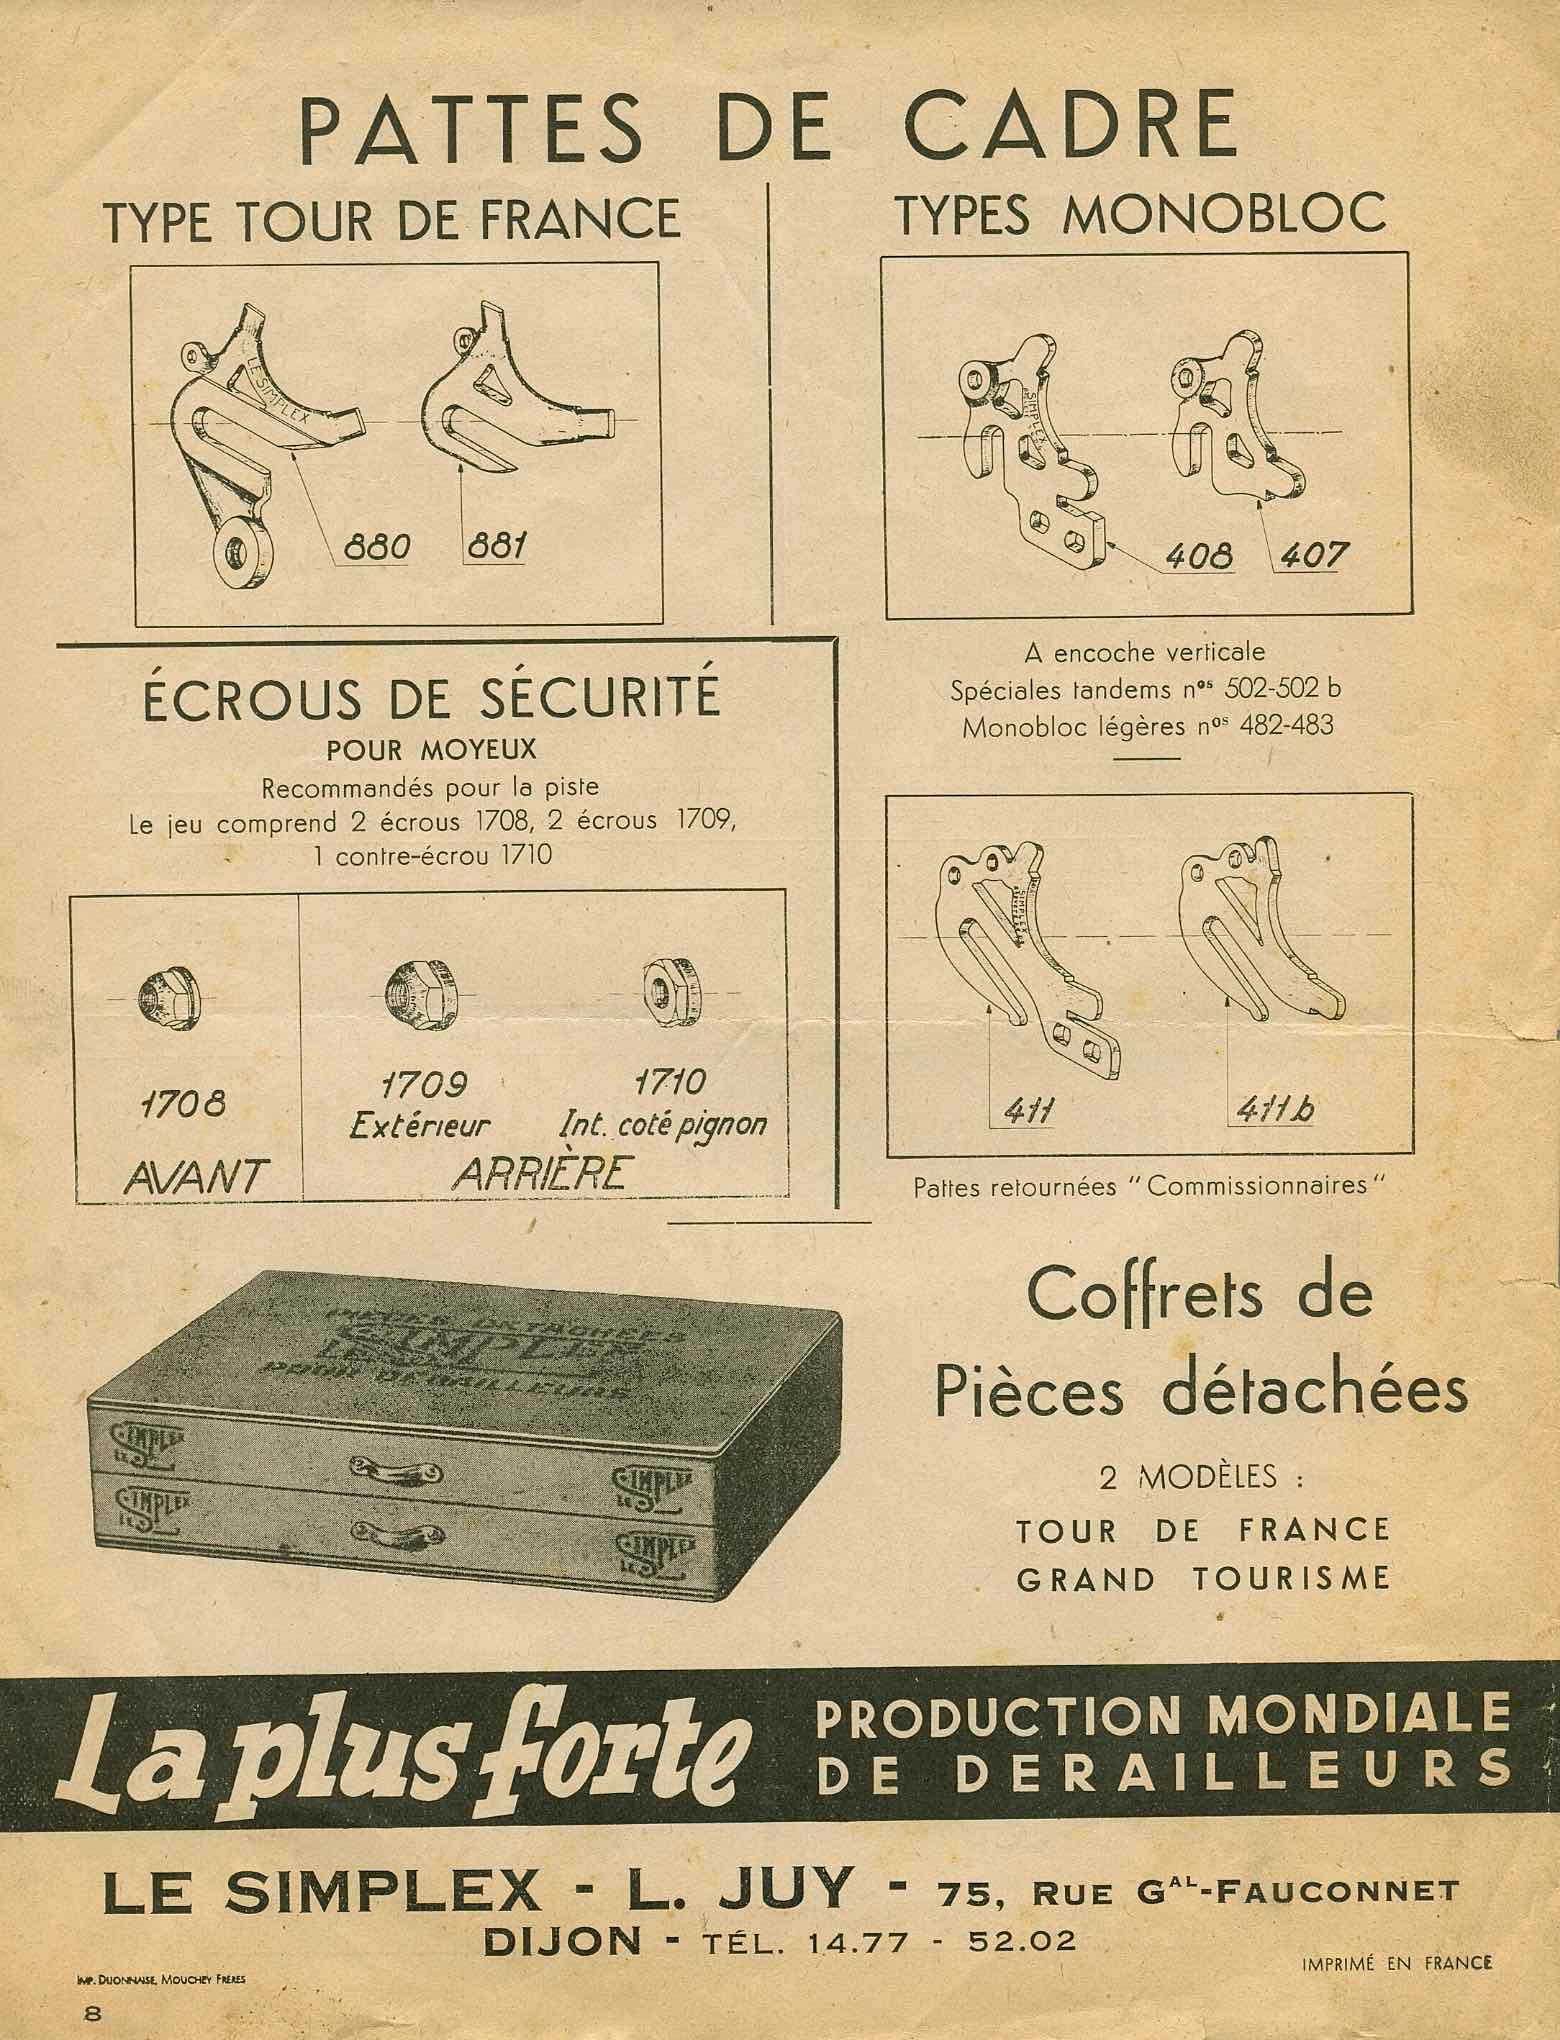 Le Simplex Pieces Detachees 1949-50 page 8 main image